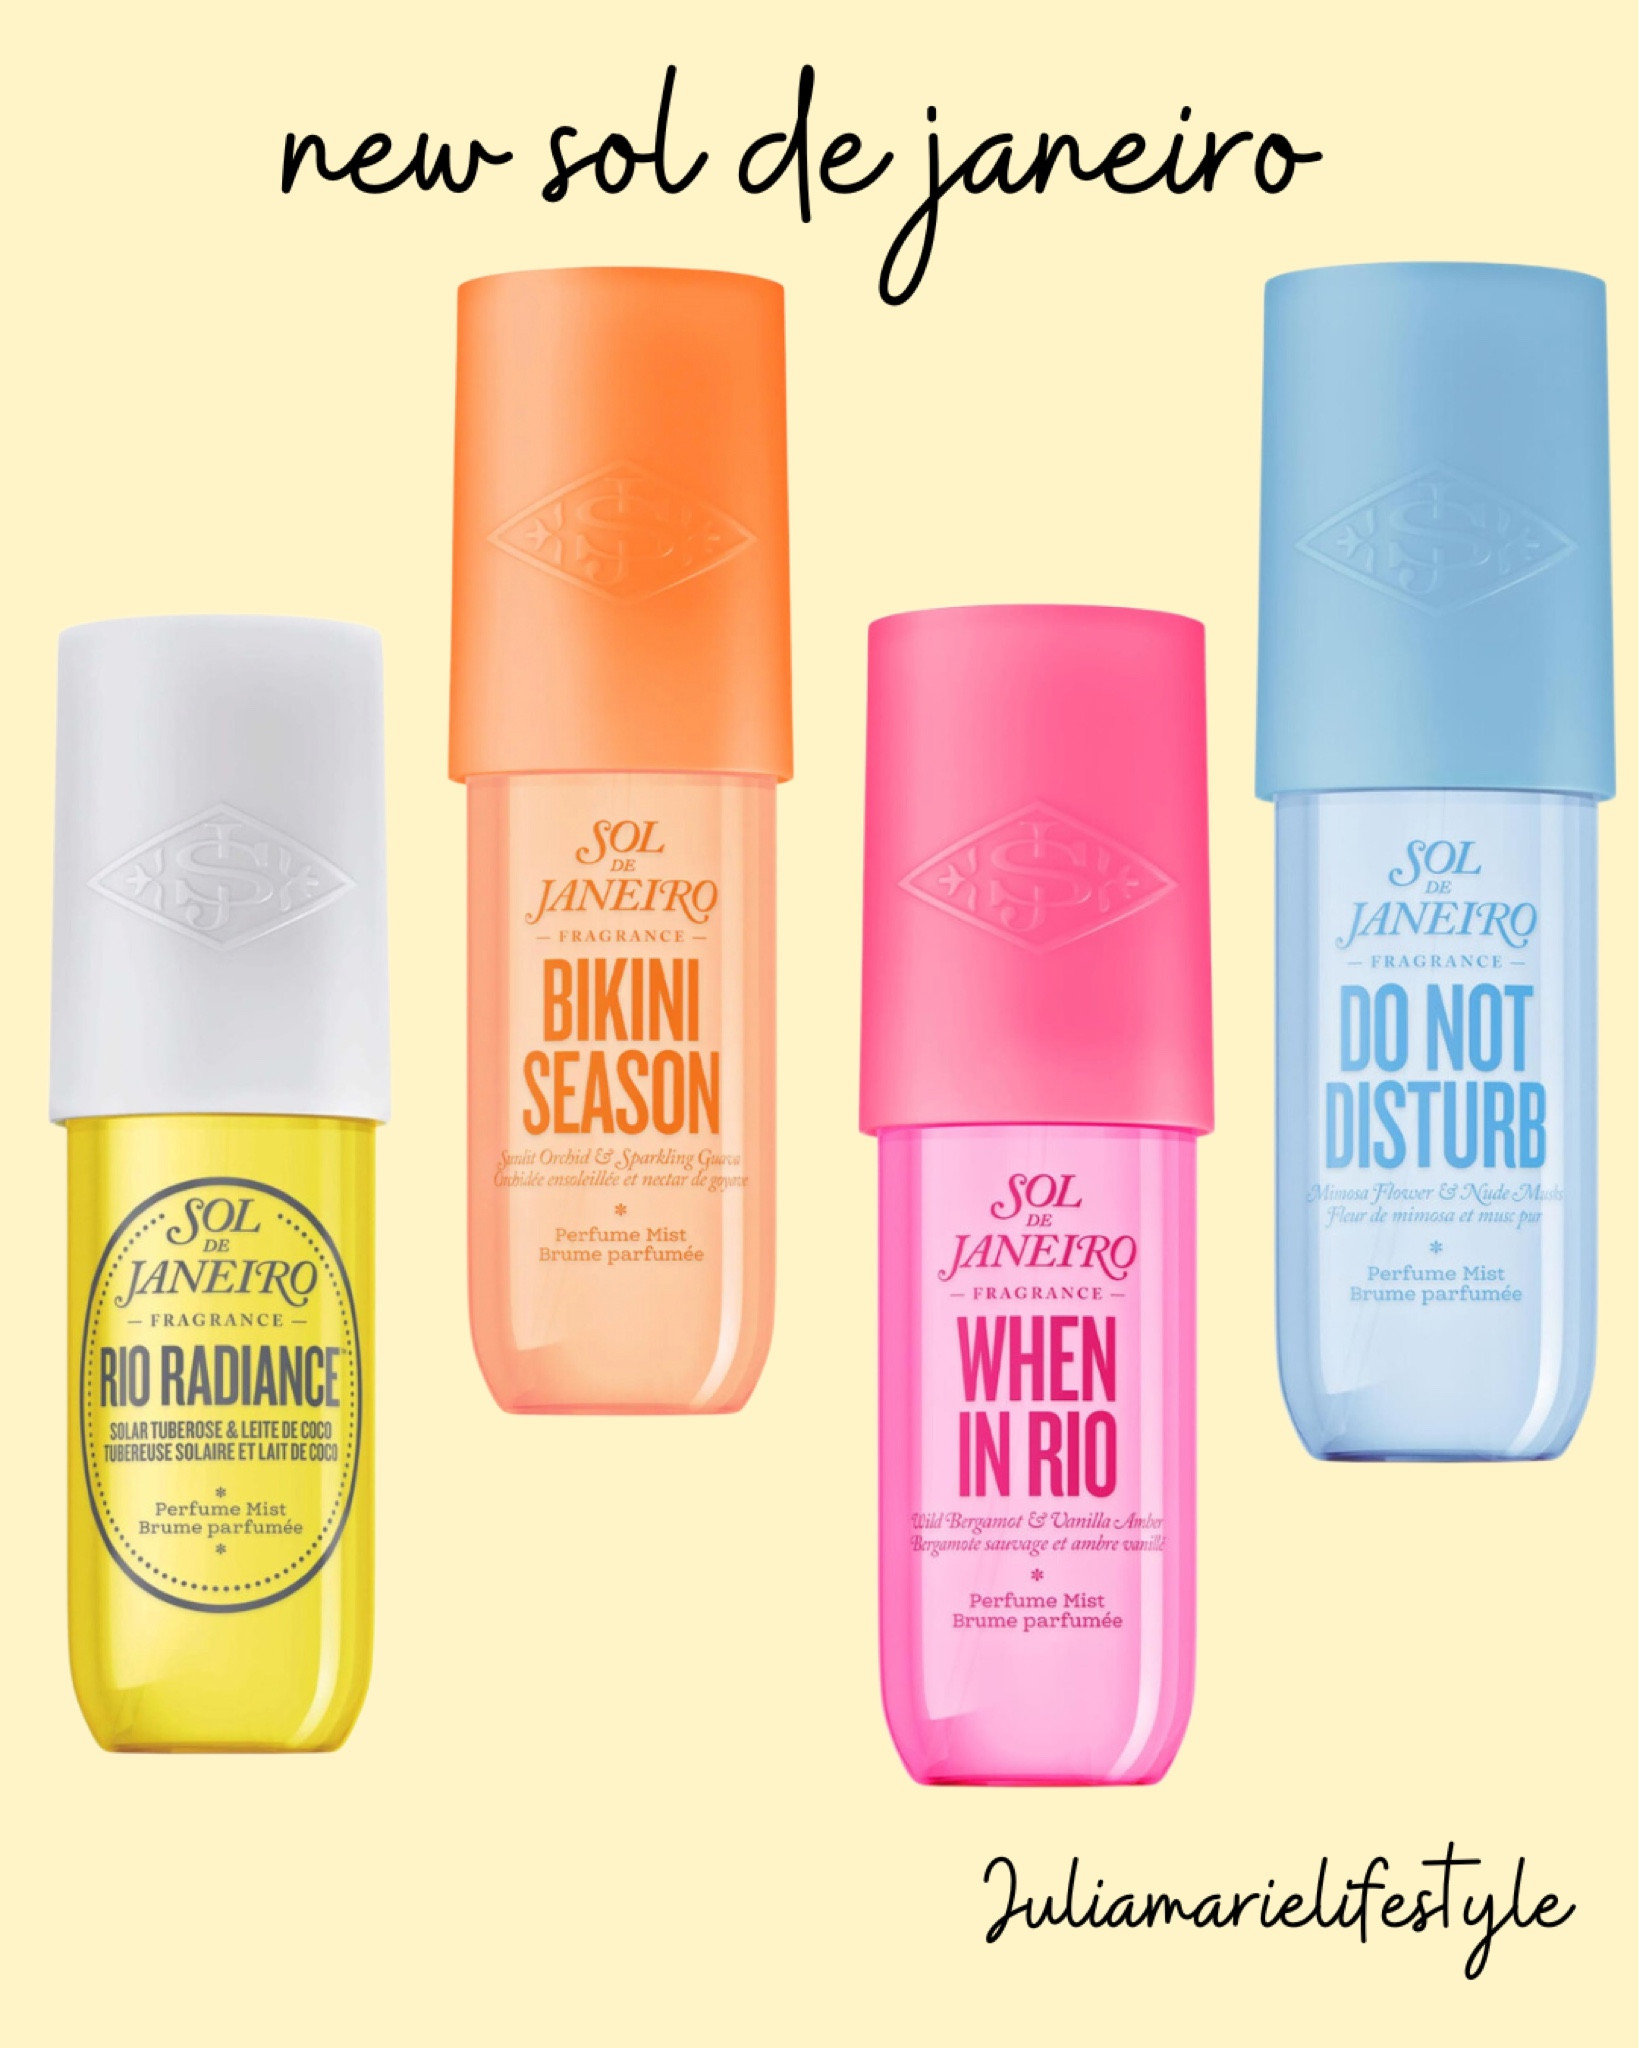 SOL DE JANEIRO Body Fragrance Mist - Rio Radiance Perfume Mist Solar Floral  & Beachy Hair & Body Perfume Spray - 8.1 fl (240ml) 